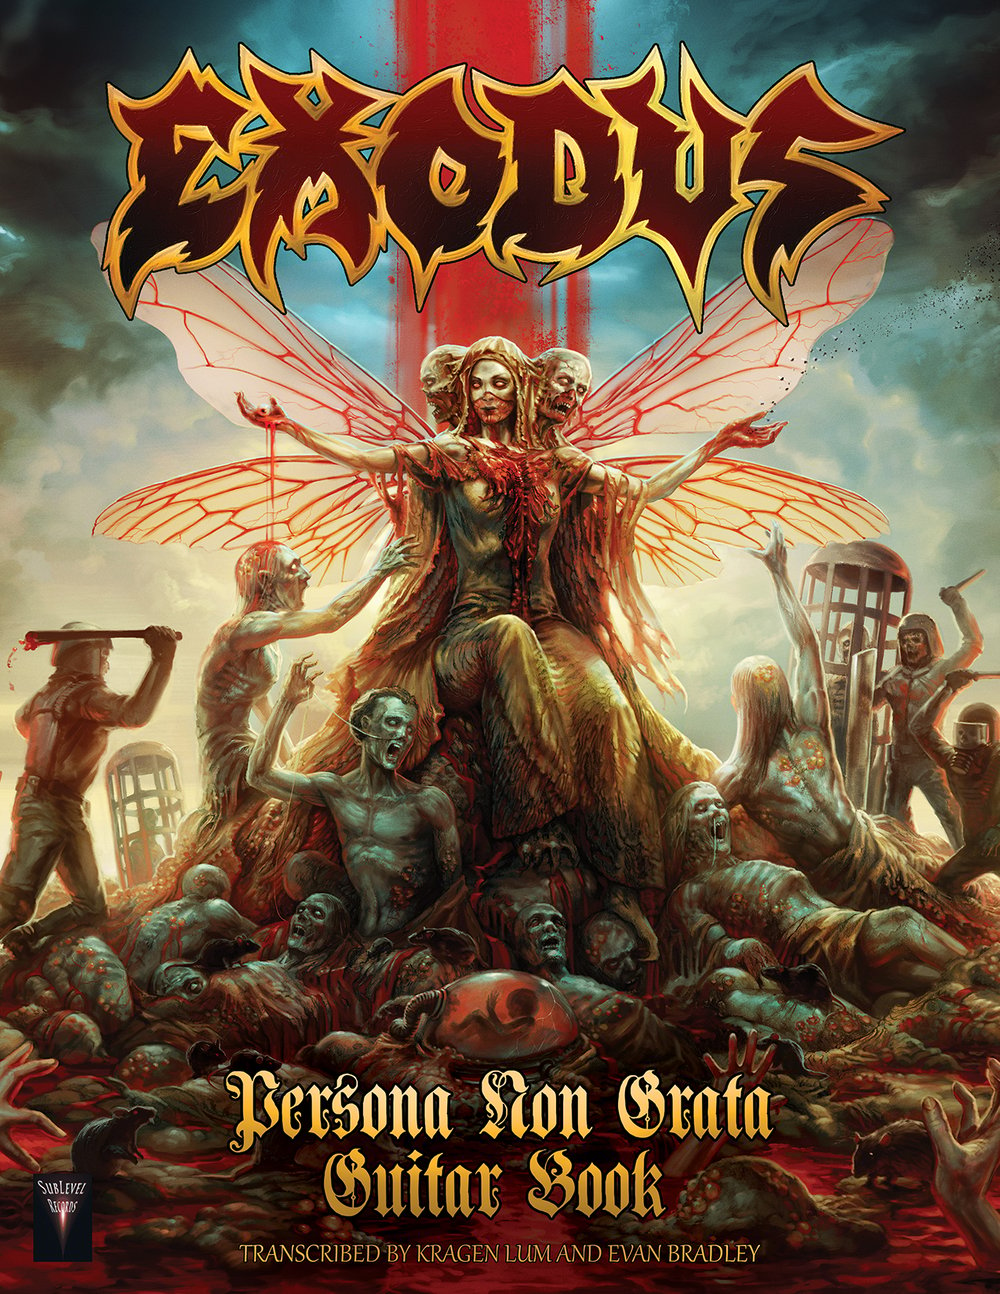 Exodus - Persona Non Grata Guitar Book (Deluxe Print Edition + Digital Copy + GP Files)